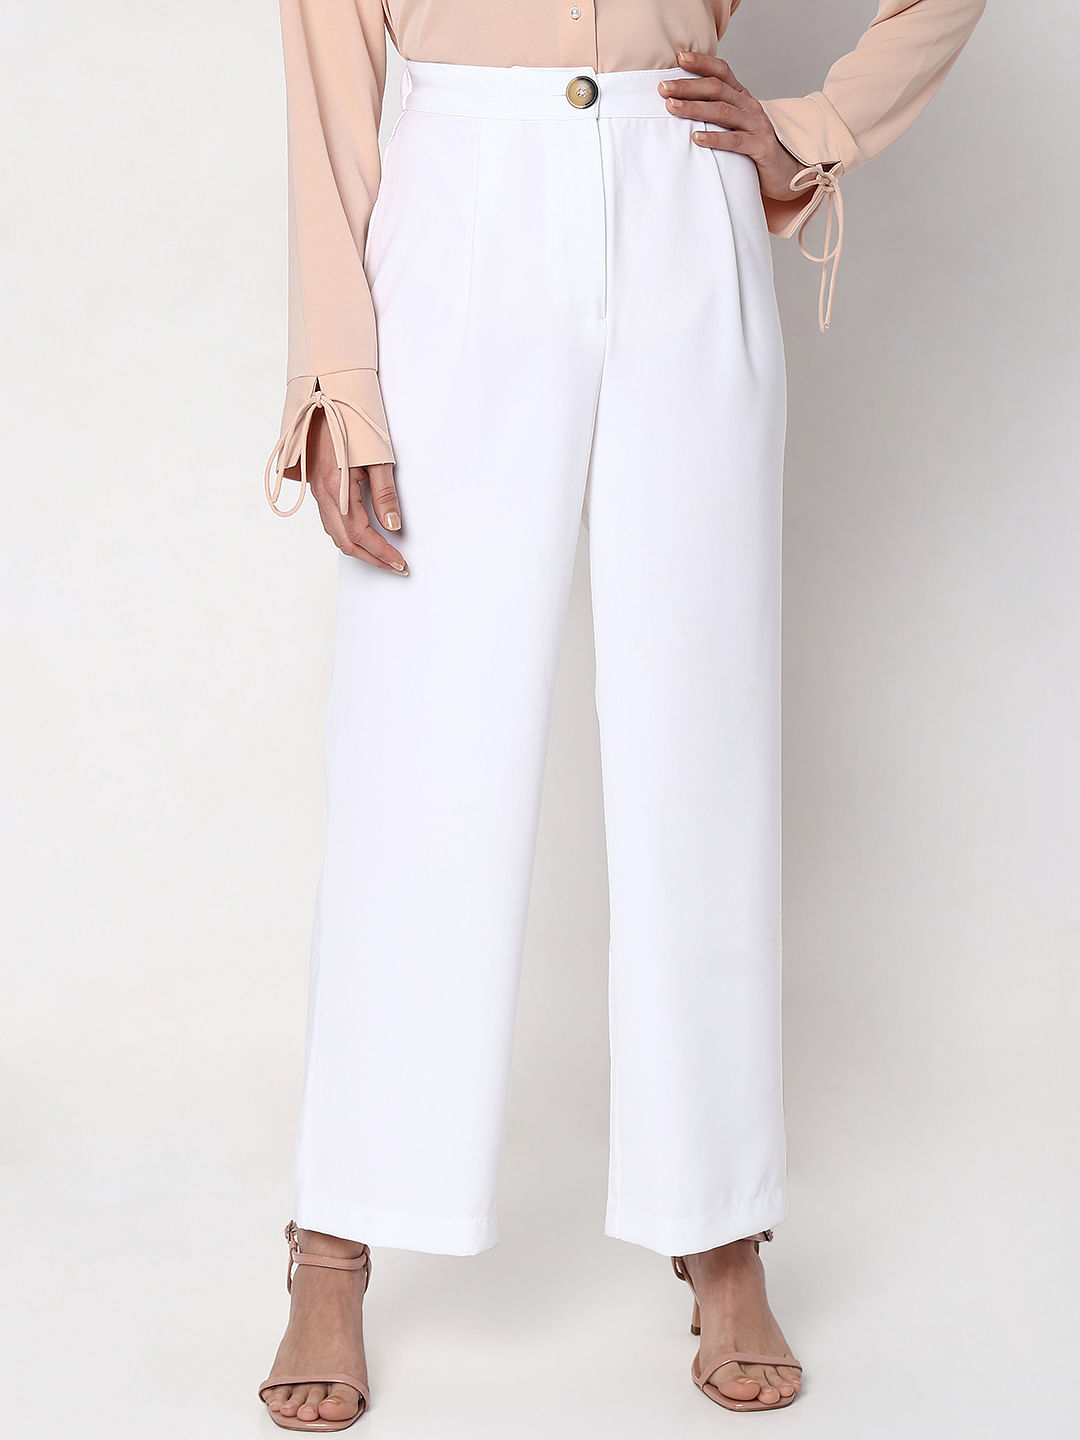 Buy White Pants for Women Online